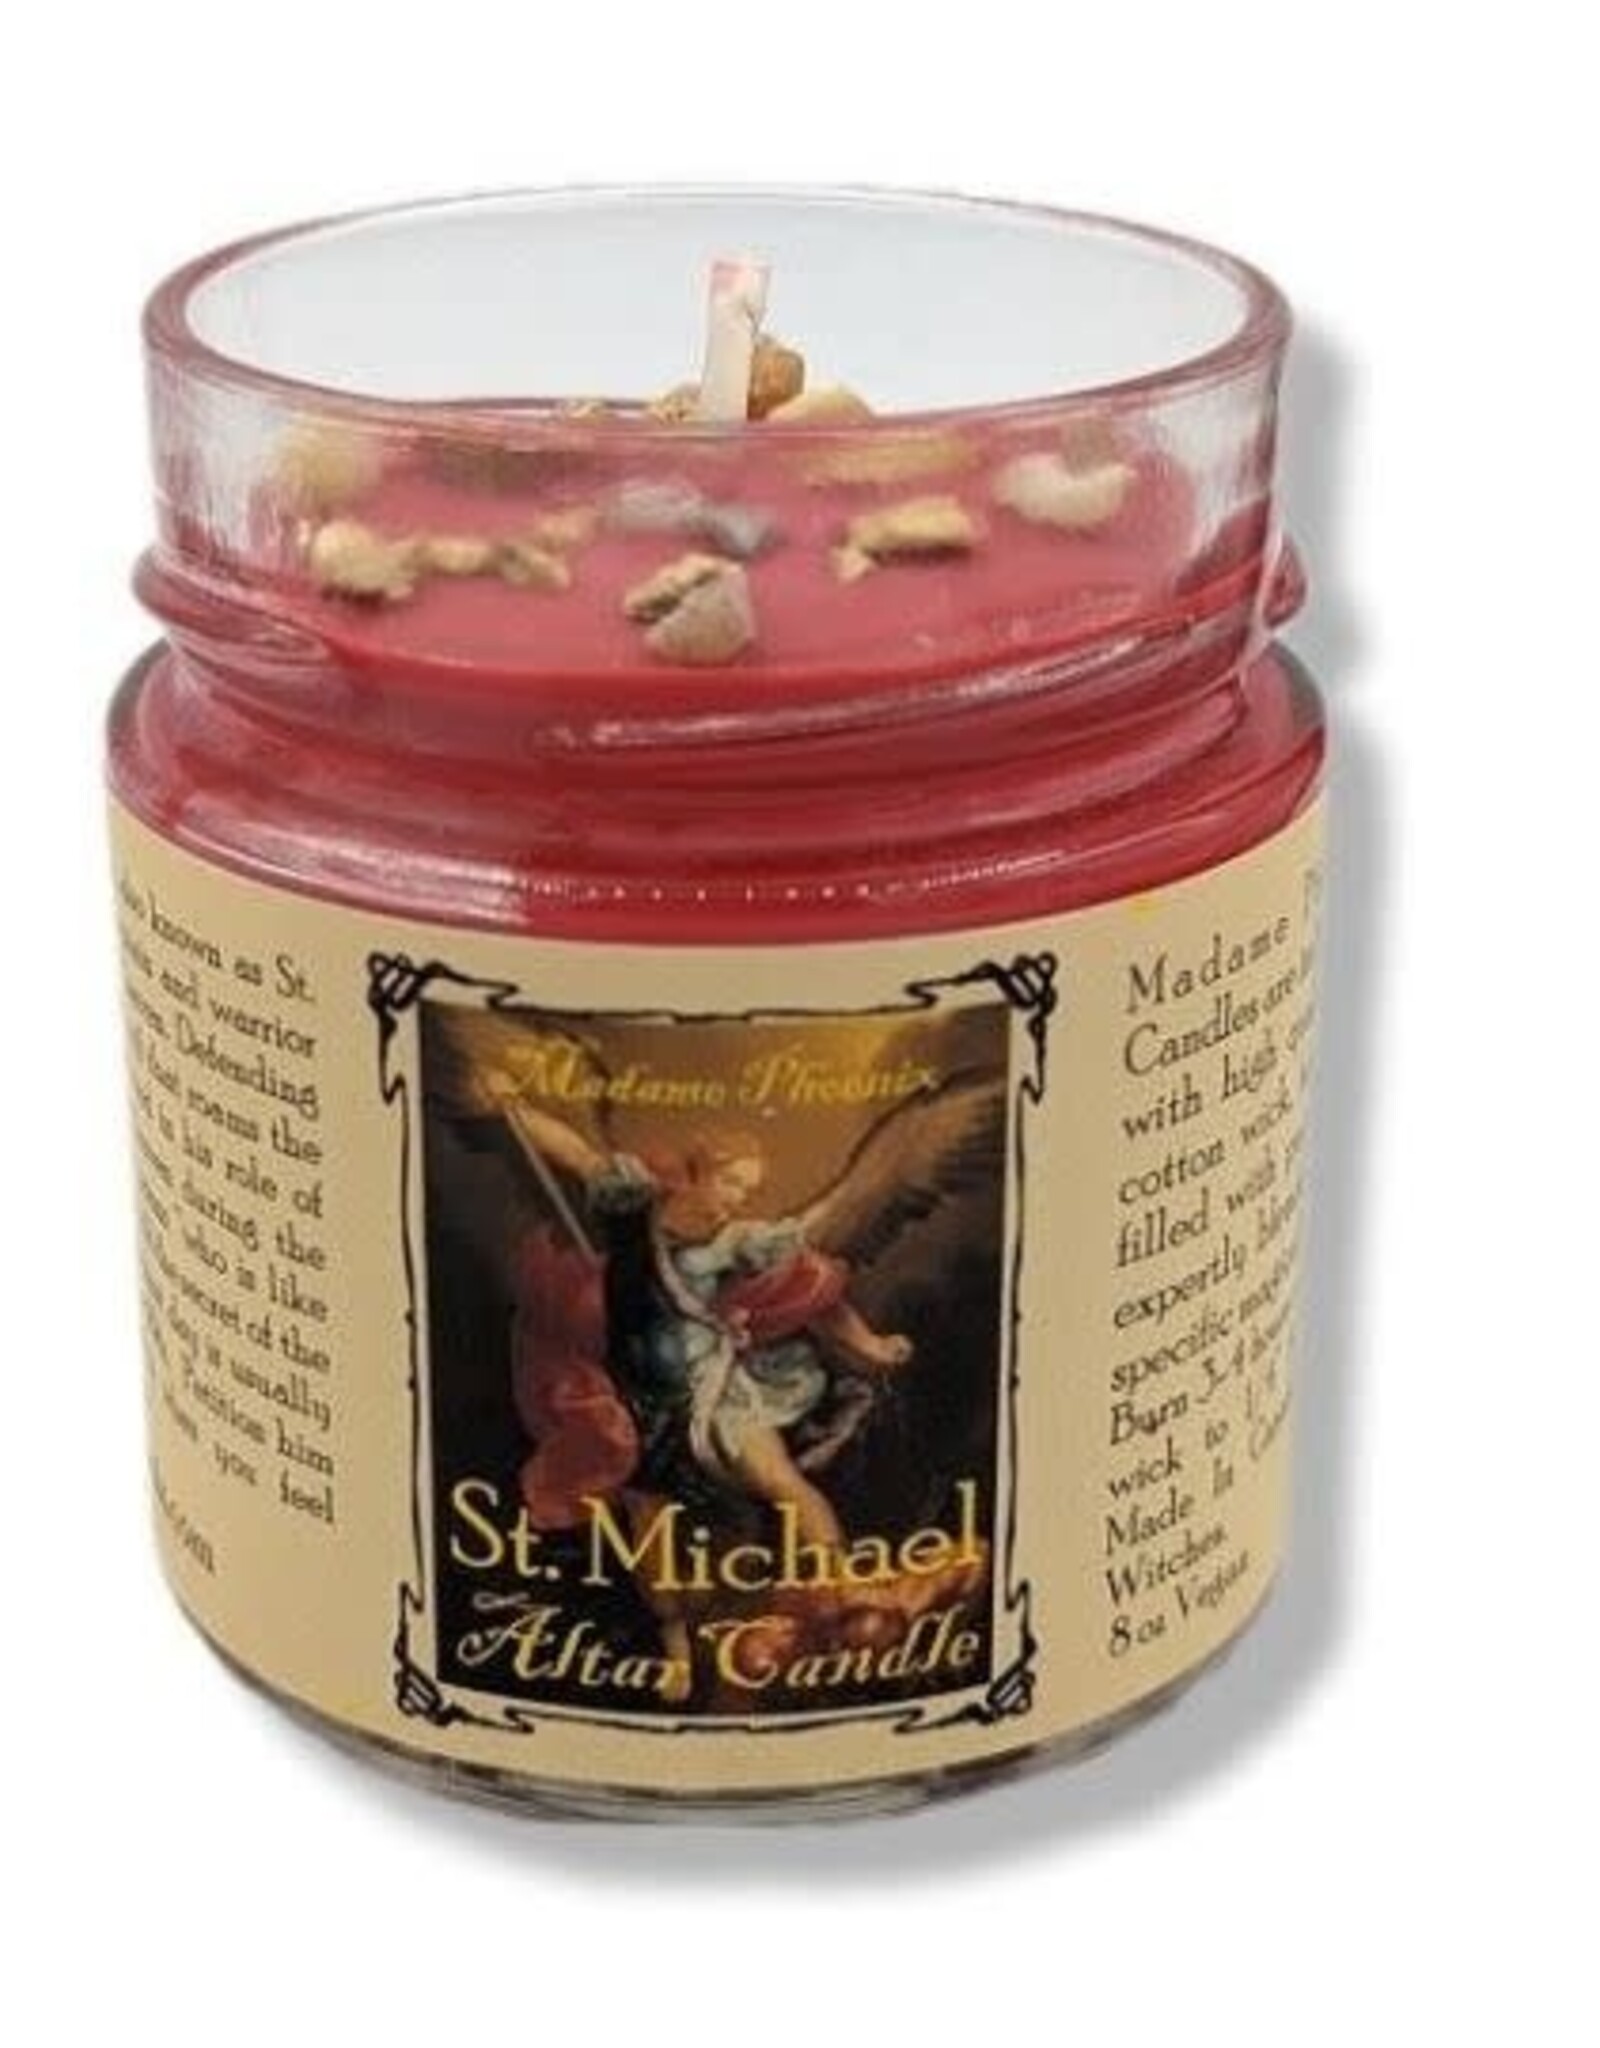 Madame Phoenix's St. Michael Archangel Petition Candle